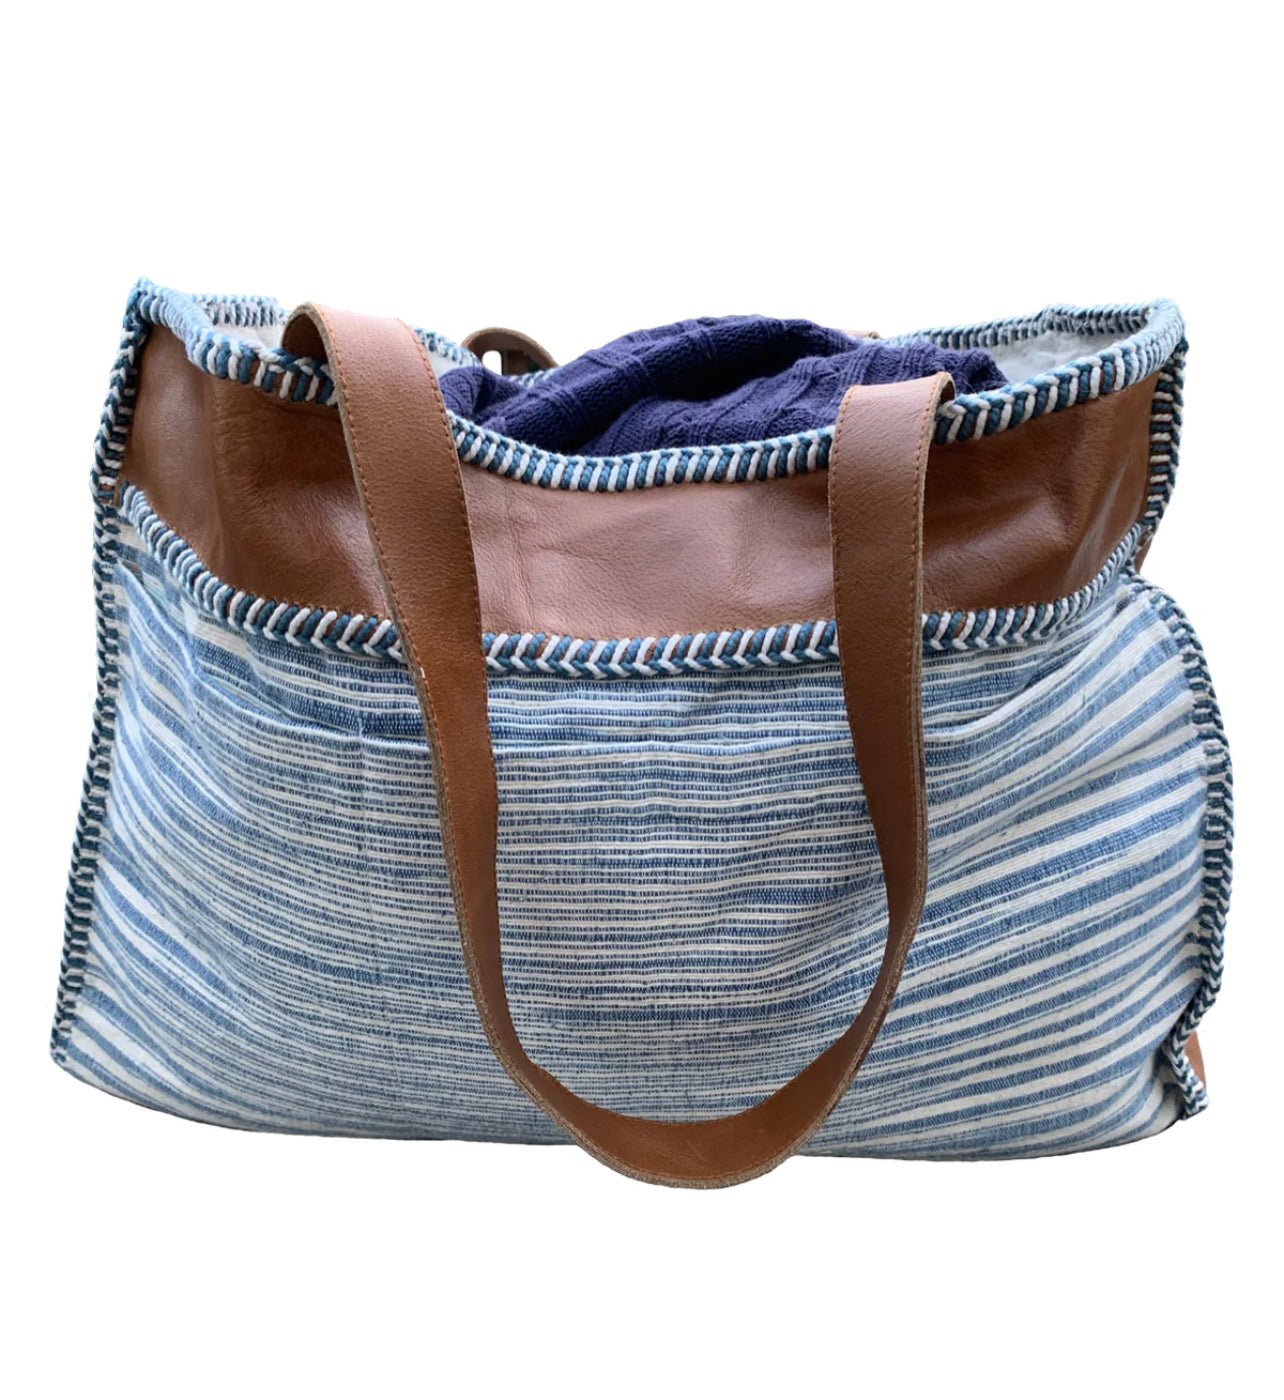 Malibu leather bag - Abigail Fox Designs